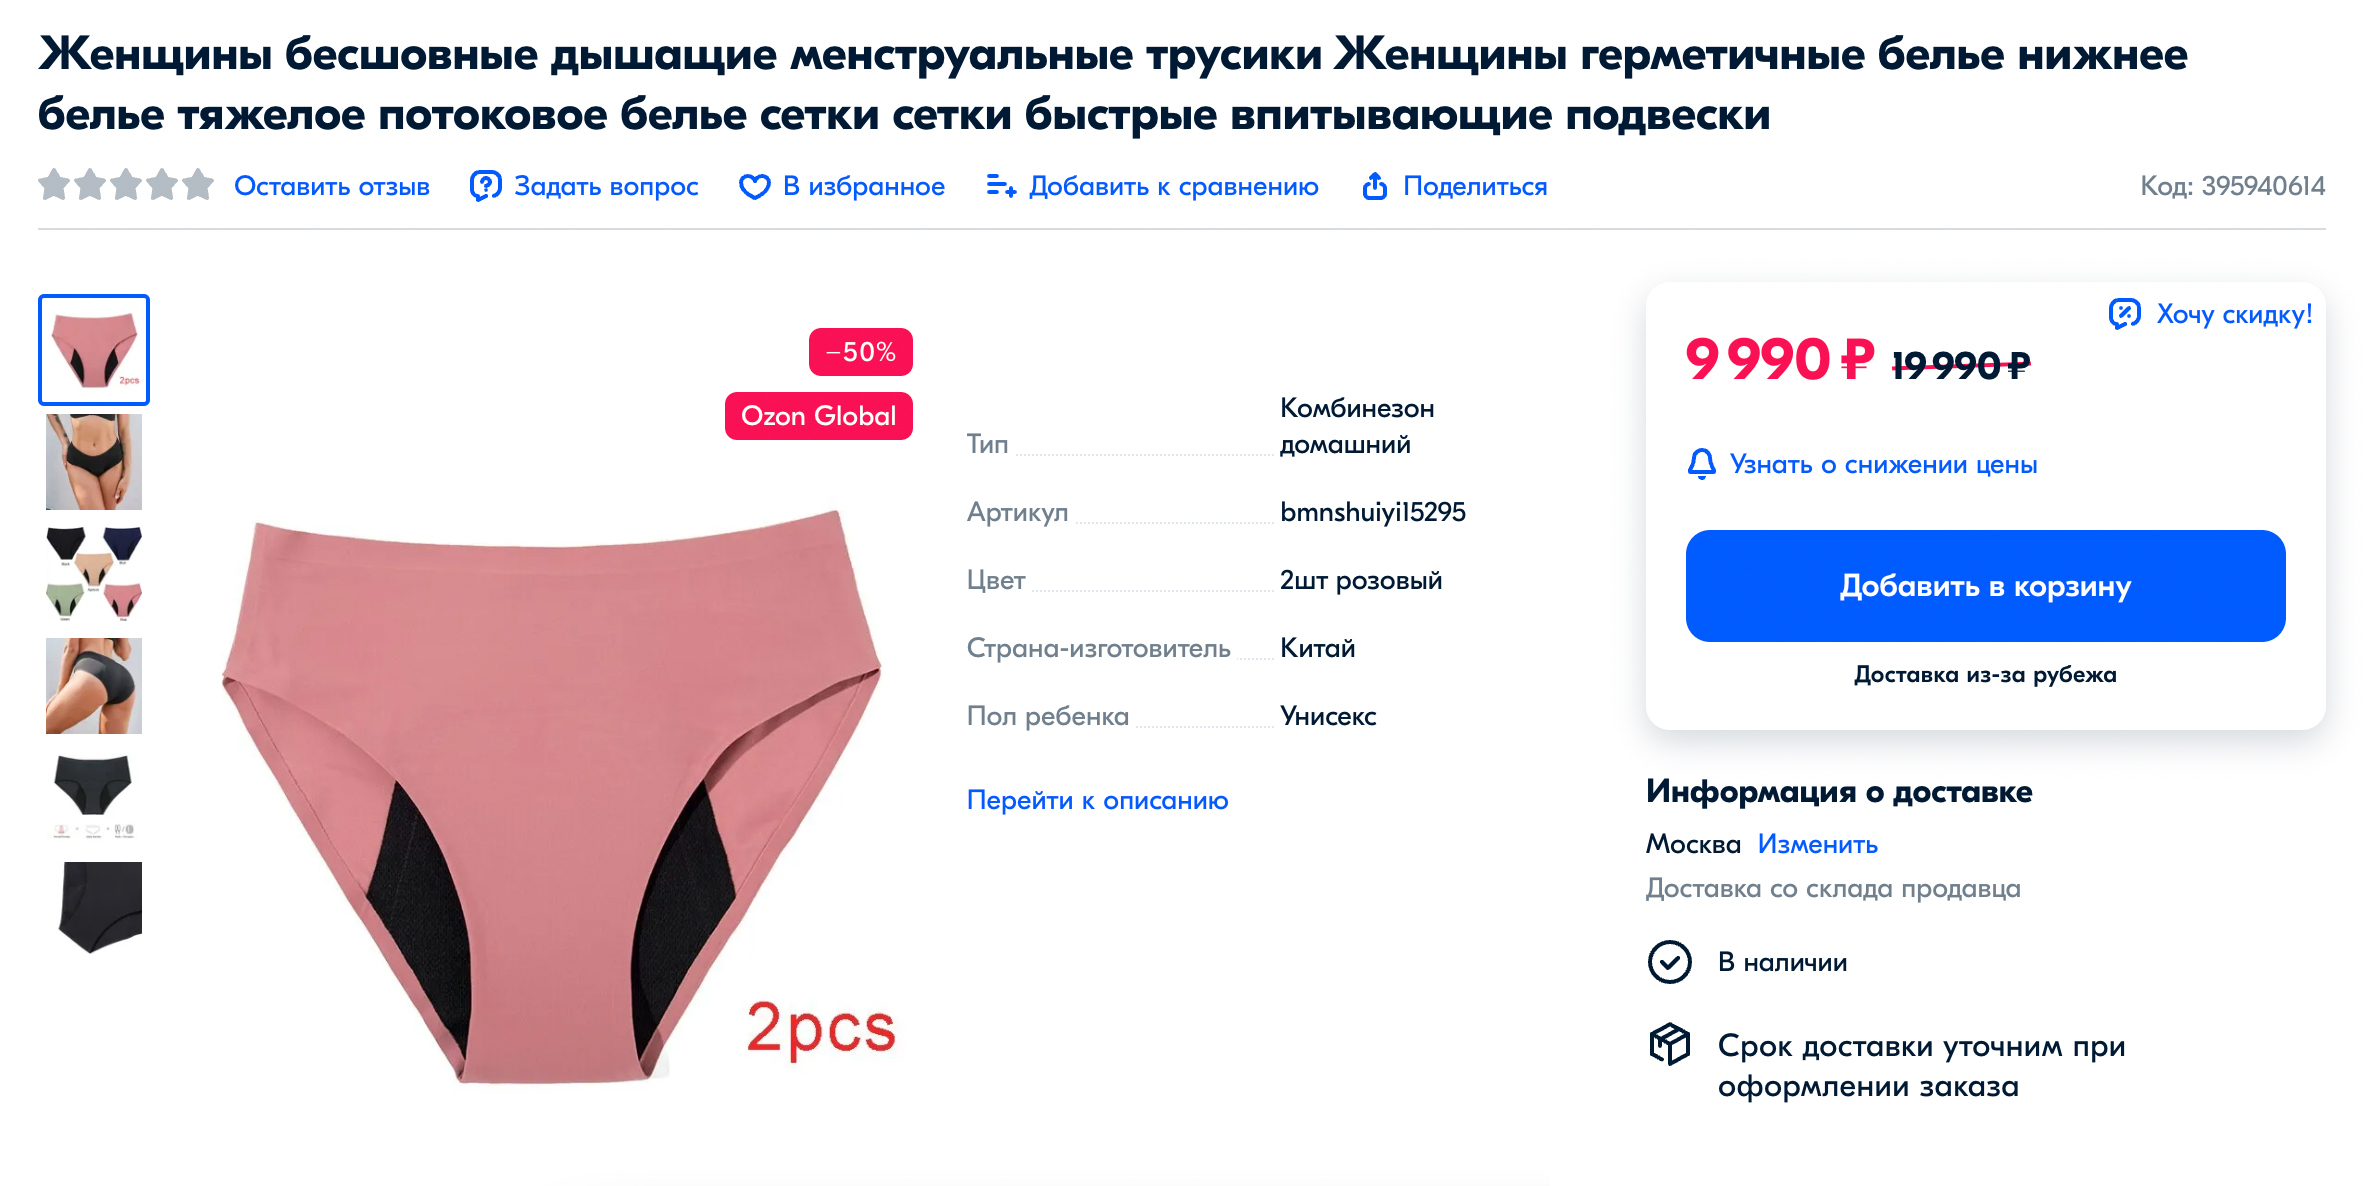 Это самые дорогие менструальные трусы, которые я нашла. Непонятно, из⁠-⁠за чего такая стоимость. Источник: ozon.ru